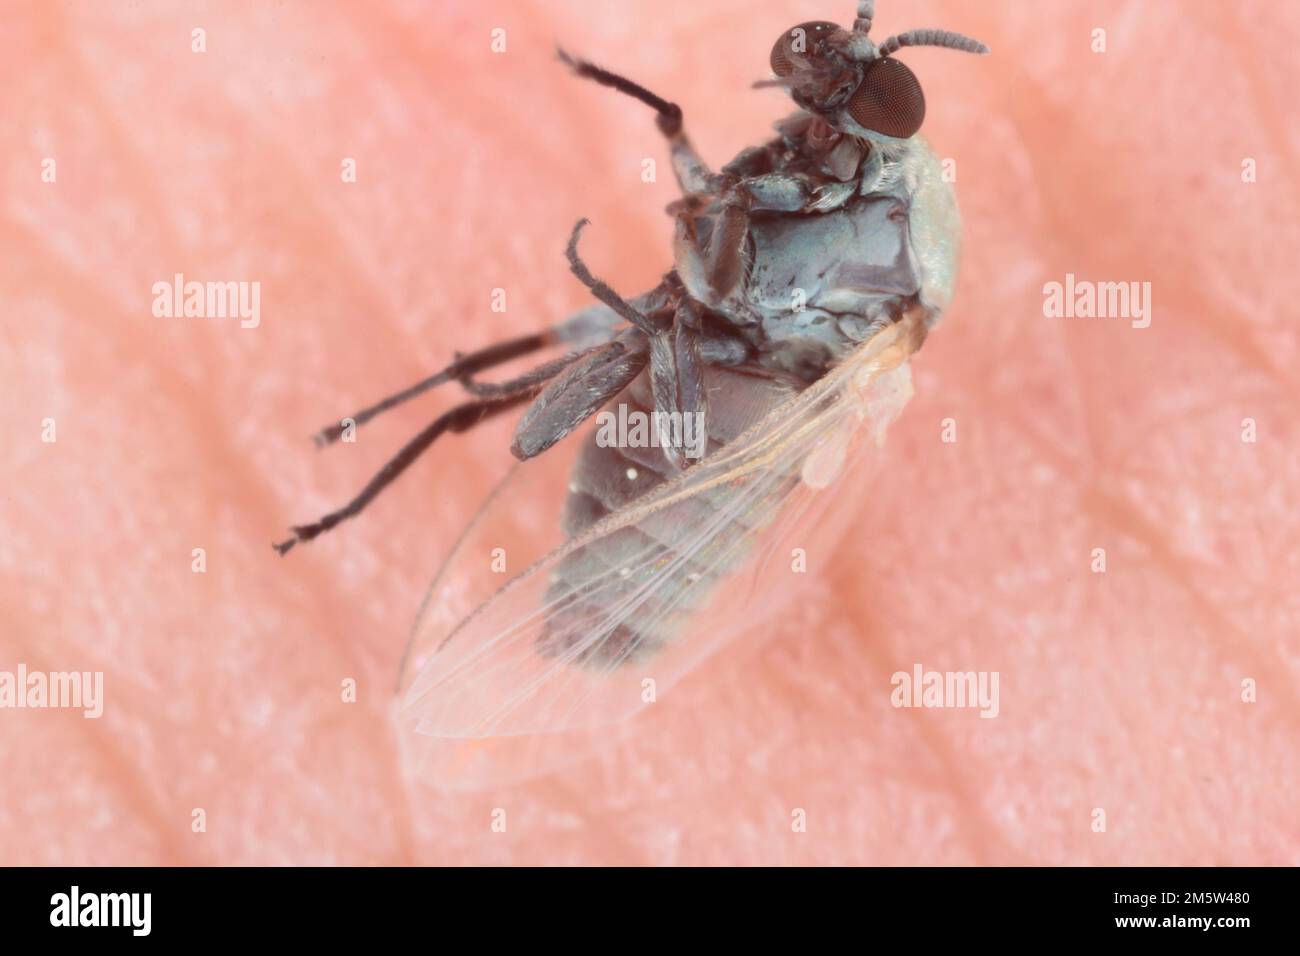 Erwachsene Schwarze Fliege der Familie Simuliidae, die getötet wurden, nachdem sie versucht hatten, Blut aus einer menschlichen Haut zu saugen. Stockfoto